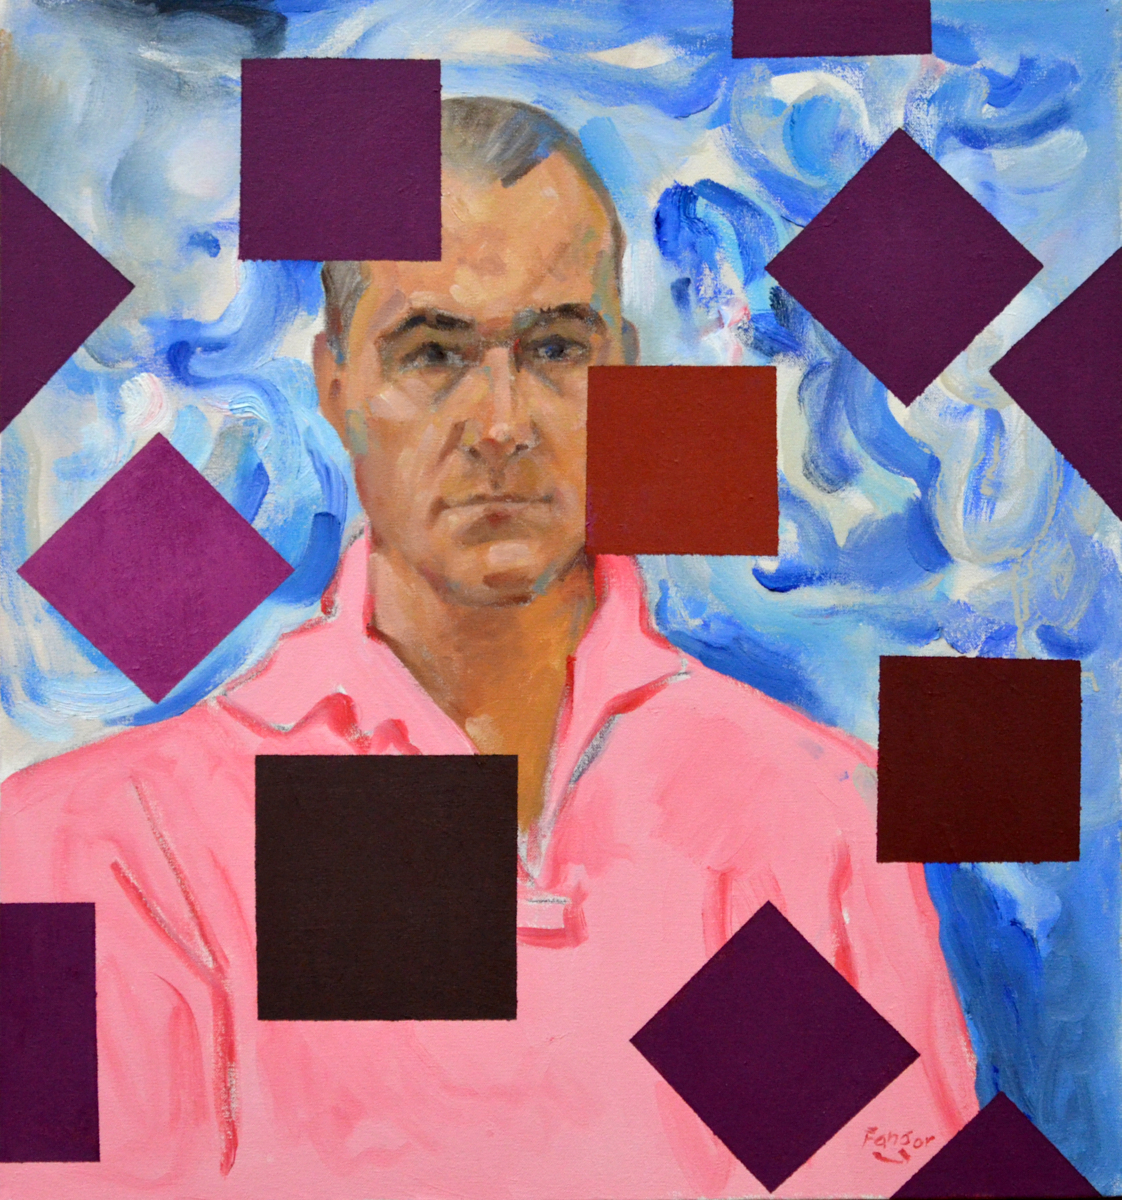 Wojciech Fangor: Portrait of Peter, 2012